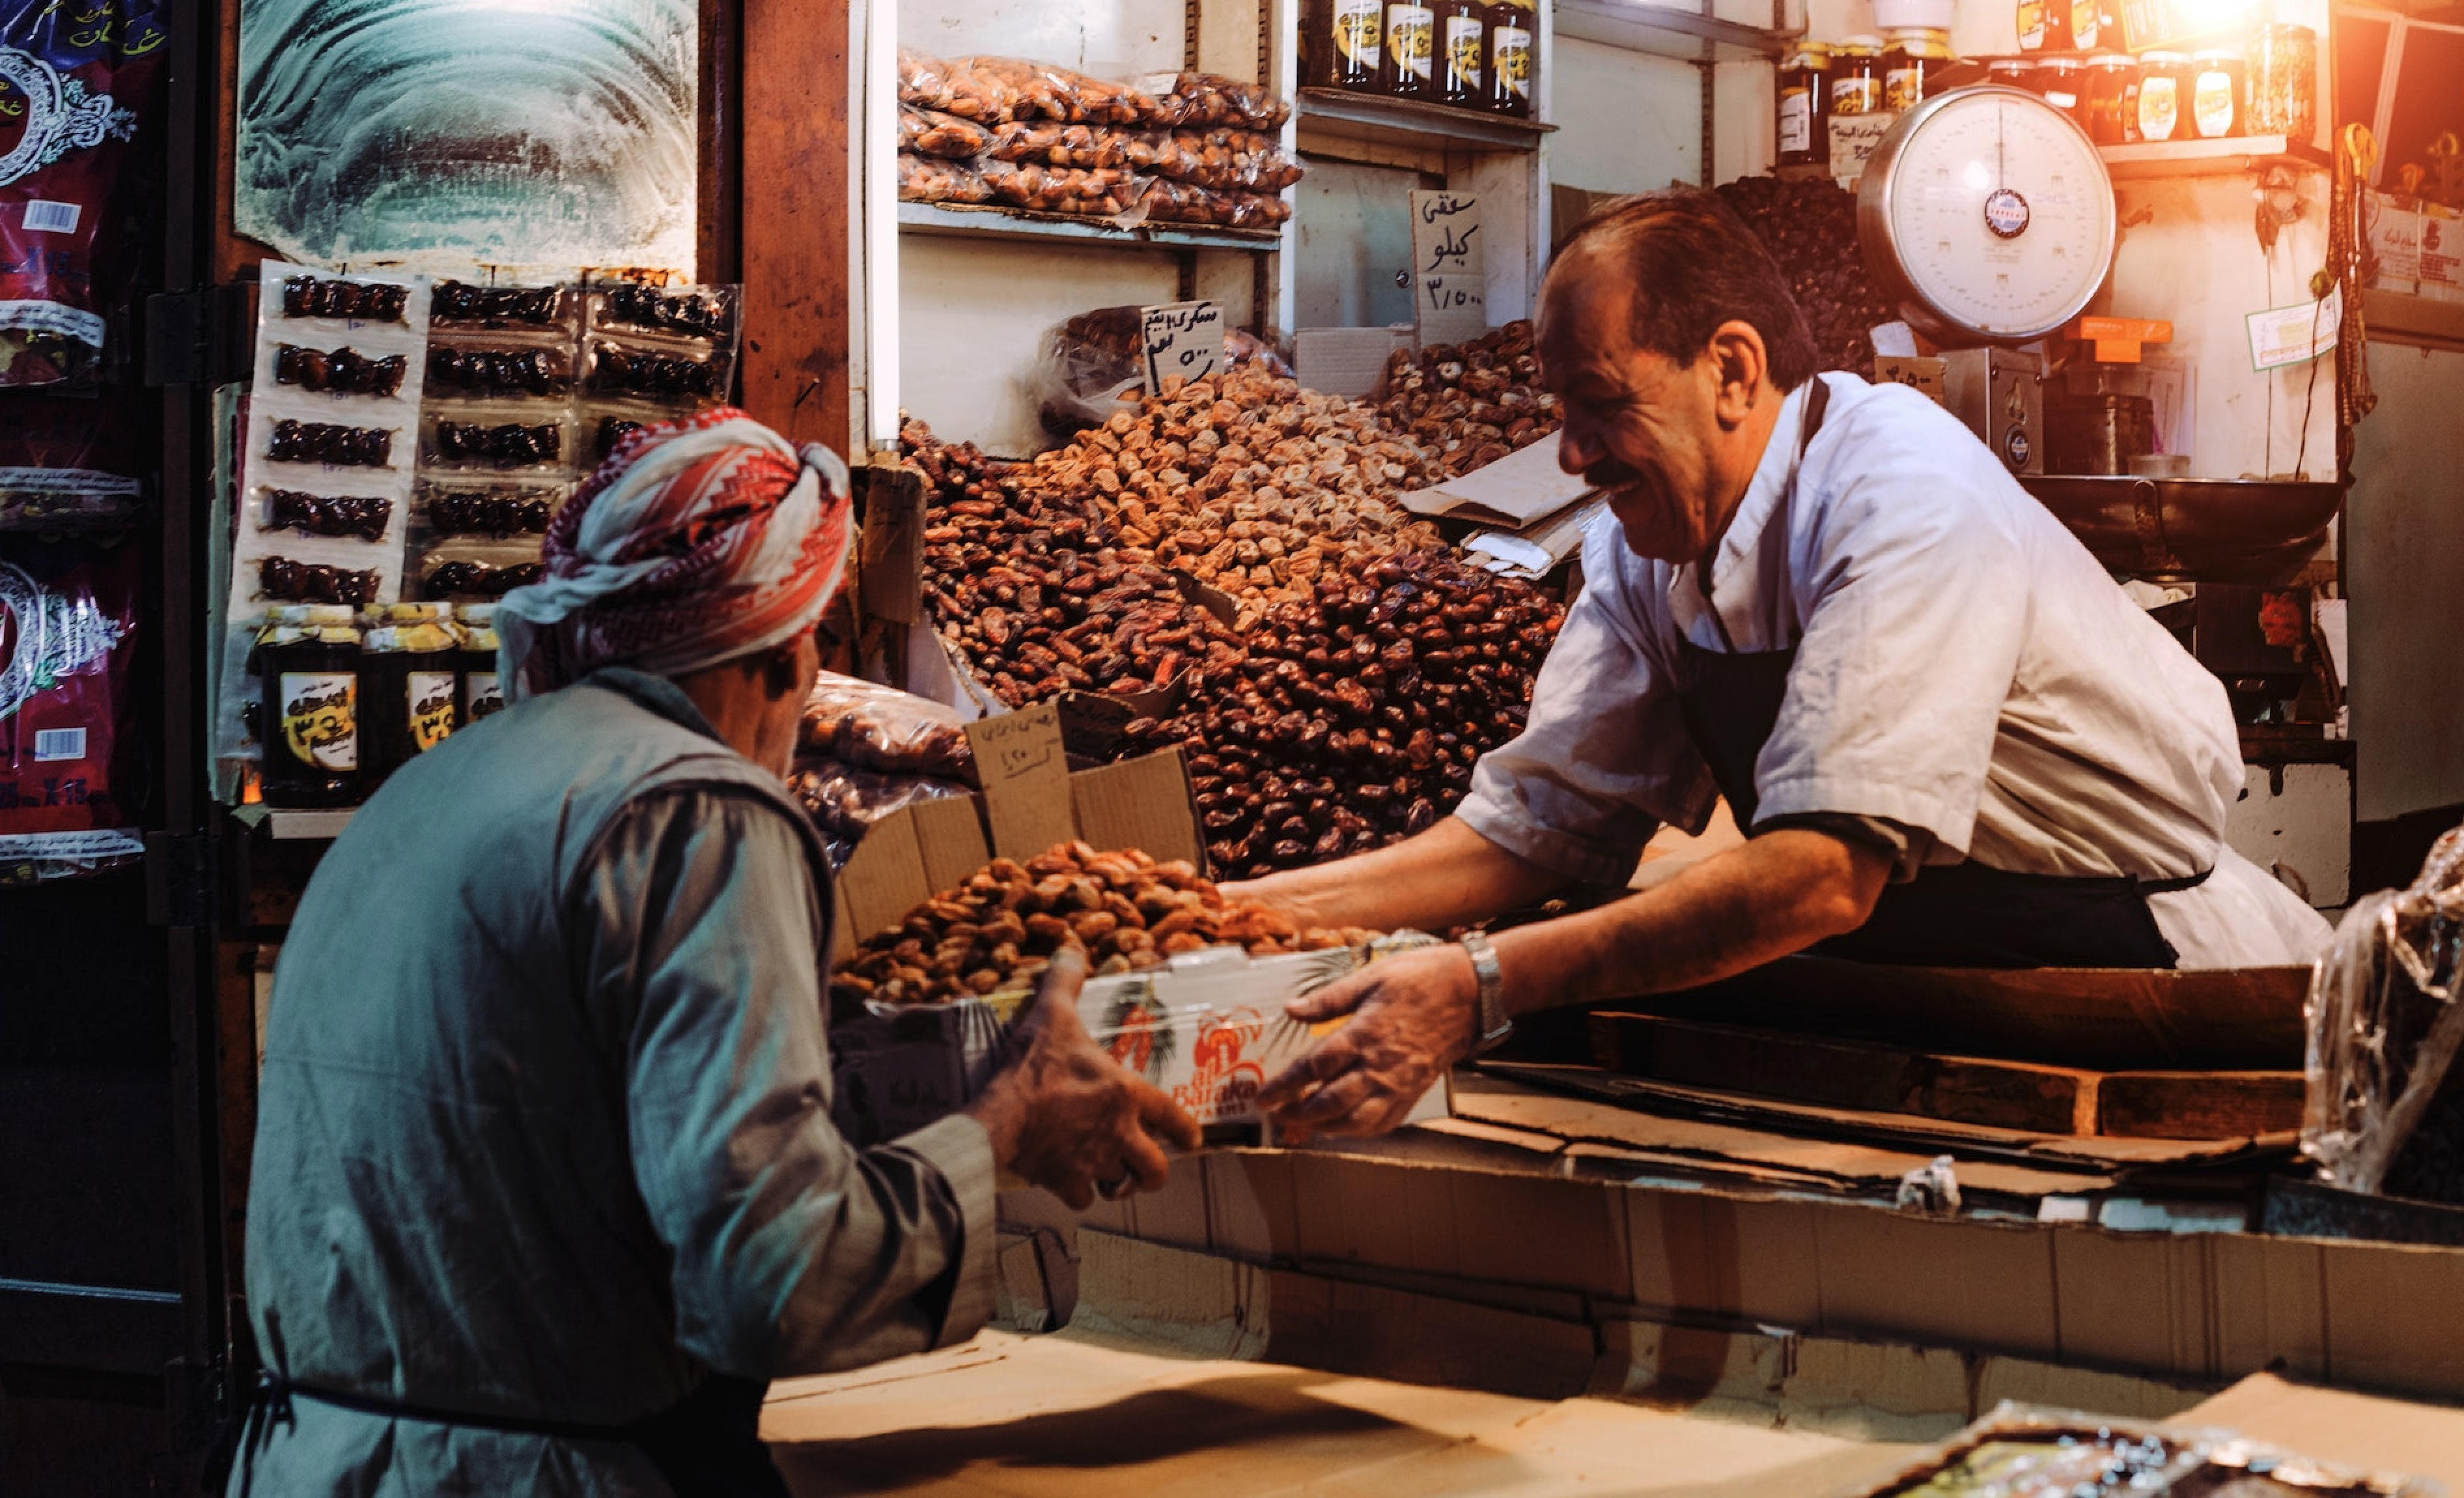 Les commerçants : un lien social dans les villages ©photo d'illustration (pexels)